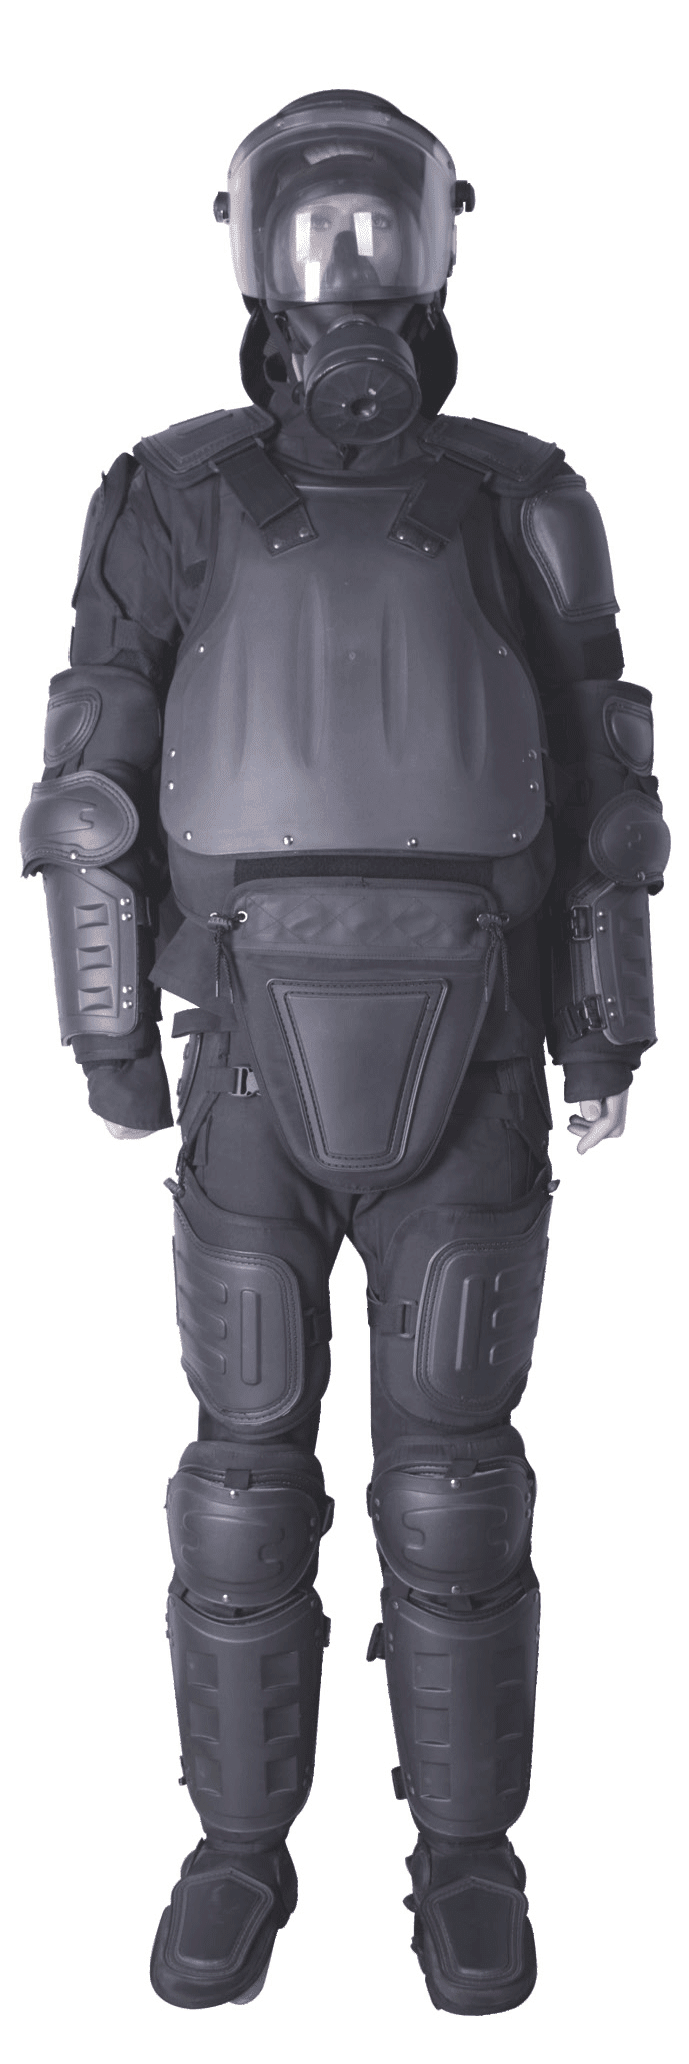 anti riot suit helmet shield gas mask (1)